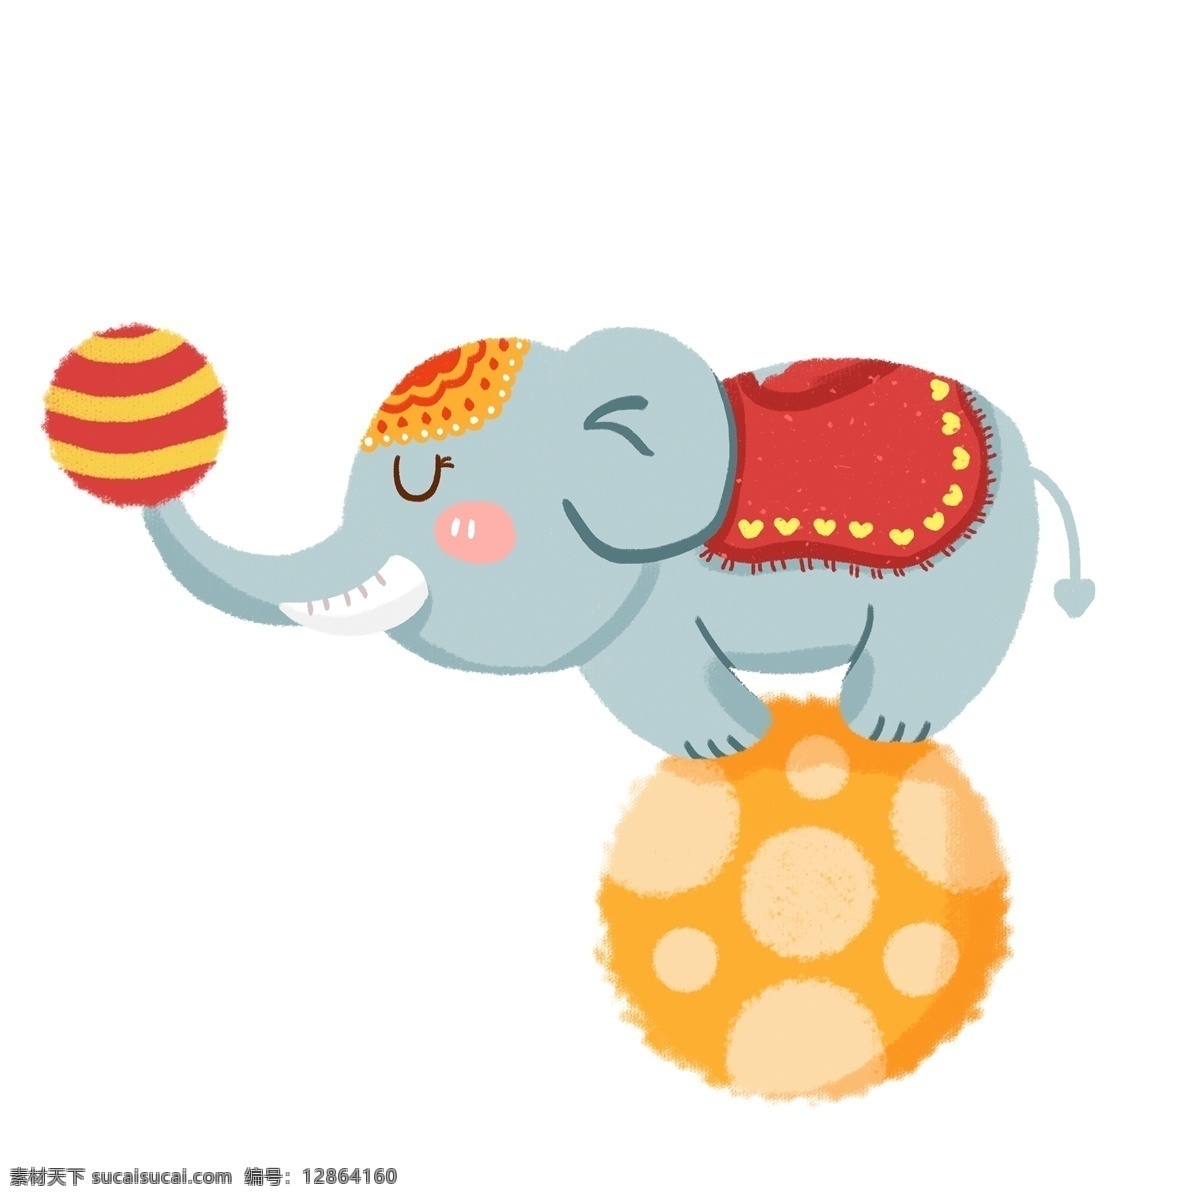 大象 玩 杂技 免 抠 图 大象滚球 杂技团 卡通动物 动物插画 可爱的动物 小动物 动物表演 卡通 灰色 小象